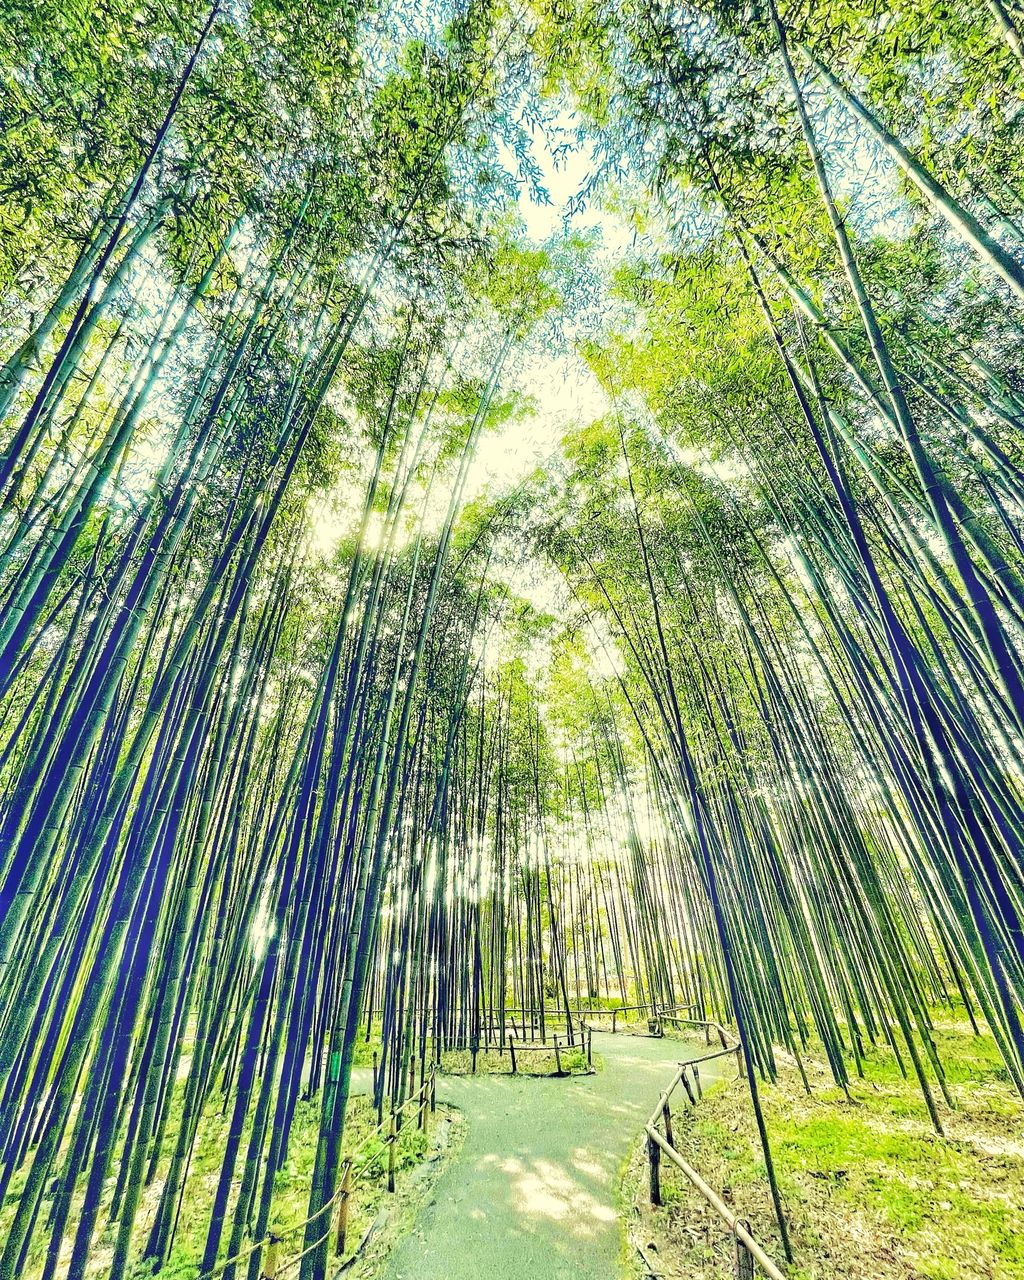 嵐山 竹林の小径 京都の 緑の絶景 と言えば 嵐山竹林の小径